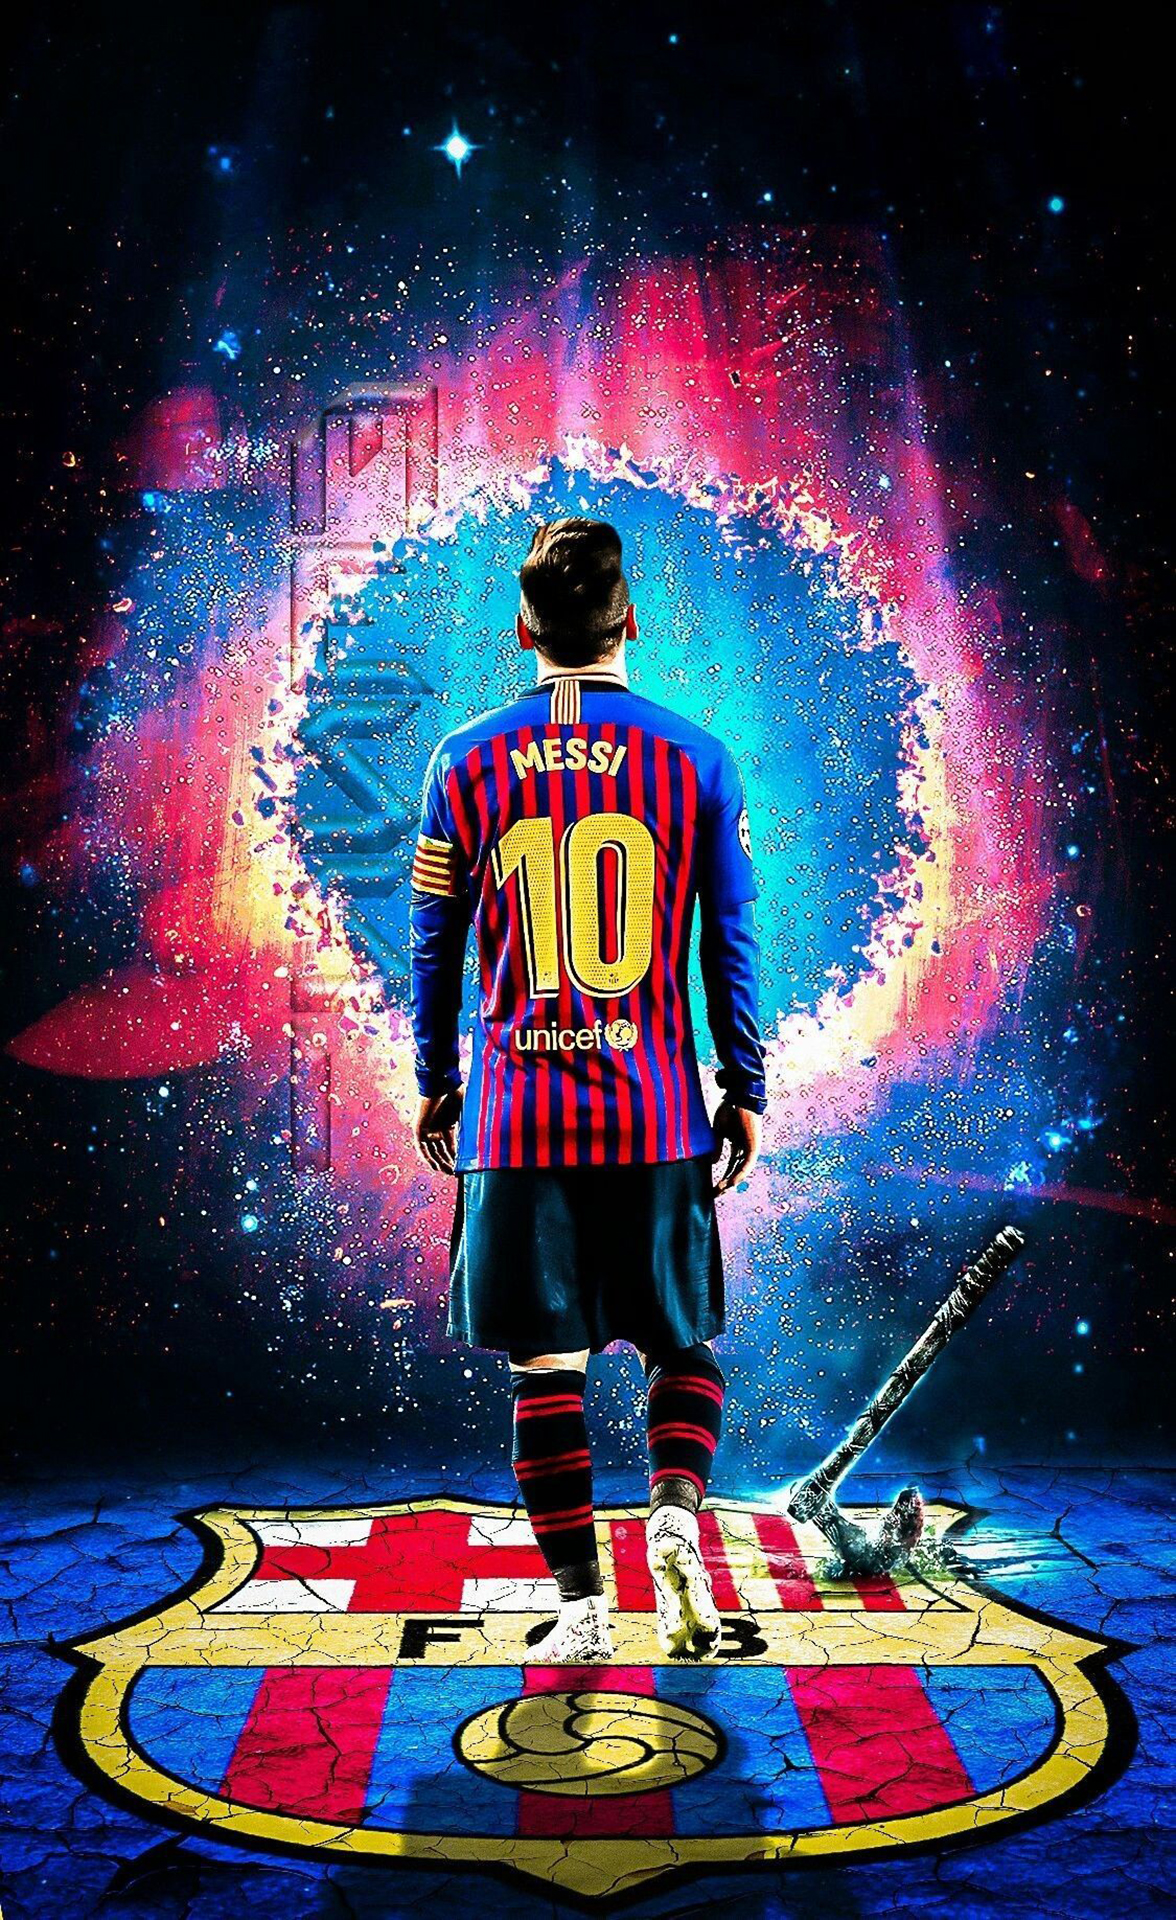 222+ Hình Nền Messi Barcelona Ngầu, Mạnh Mẽ [OÁCH XÀ LÀ BÁCH] - Messi, Hình nền, Barcelona, Ngầu, Mạnh mẽ: Chỉ cần một cái nhìn đầu tiên, bạn đã thấy được mức độ ngầu và mạnh mẽ khi kết hợp giữa Messi và Barcelona trong những bức ảnh hình nền cực chất. Hãy thêm nét cá tính cho điện thoại của mình với những bức ảnh đầy sức hút này.